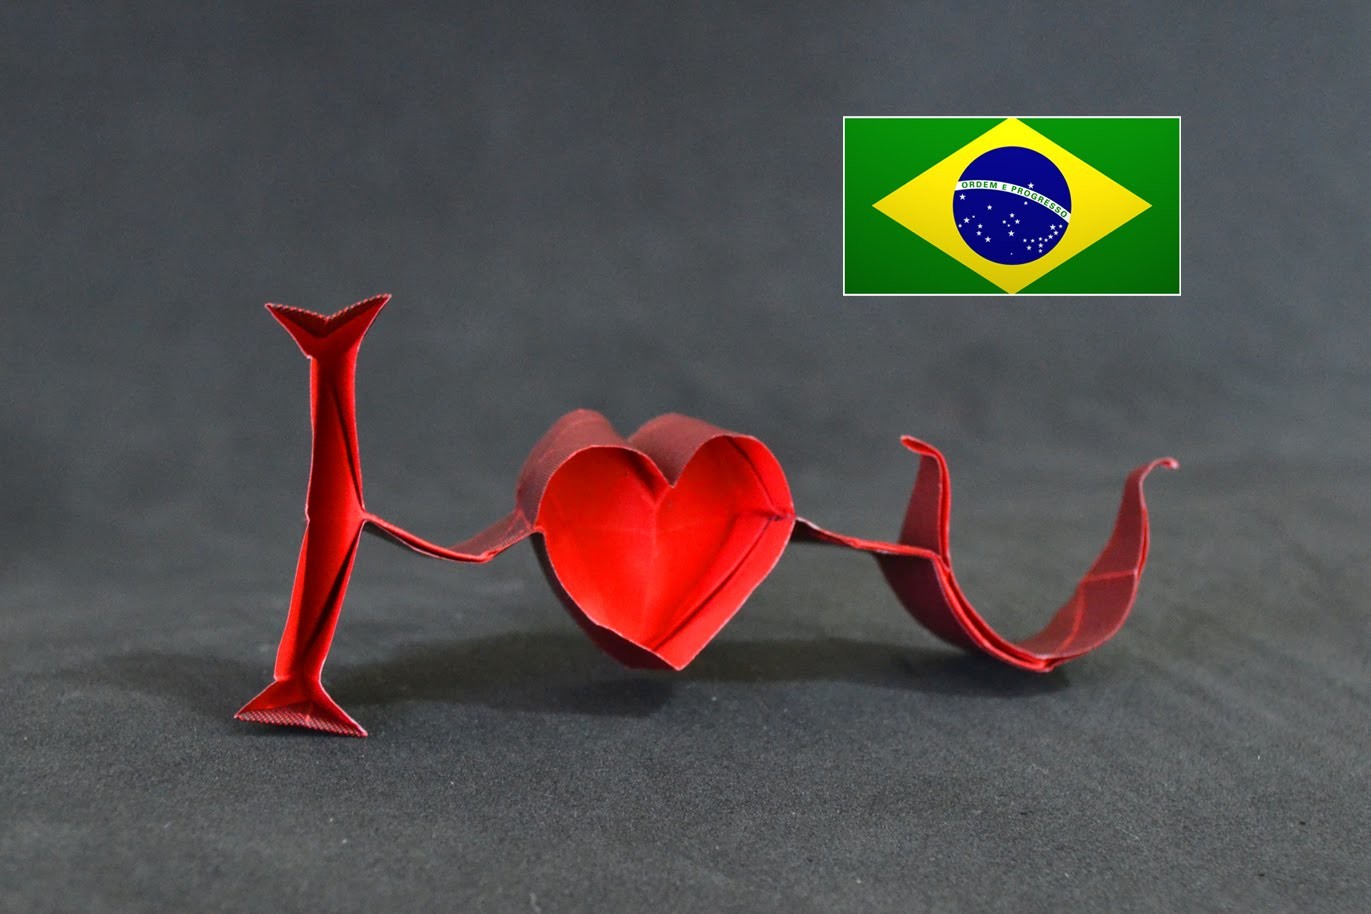 Origami: I Love You ( Jeremy Shafer ) - Instruções em português PT BR